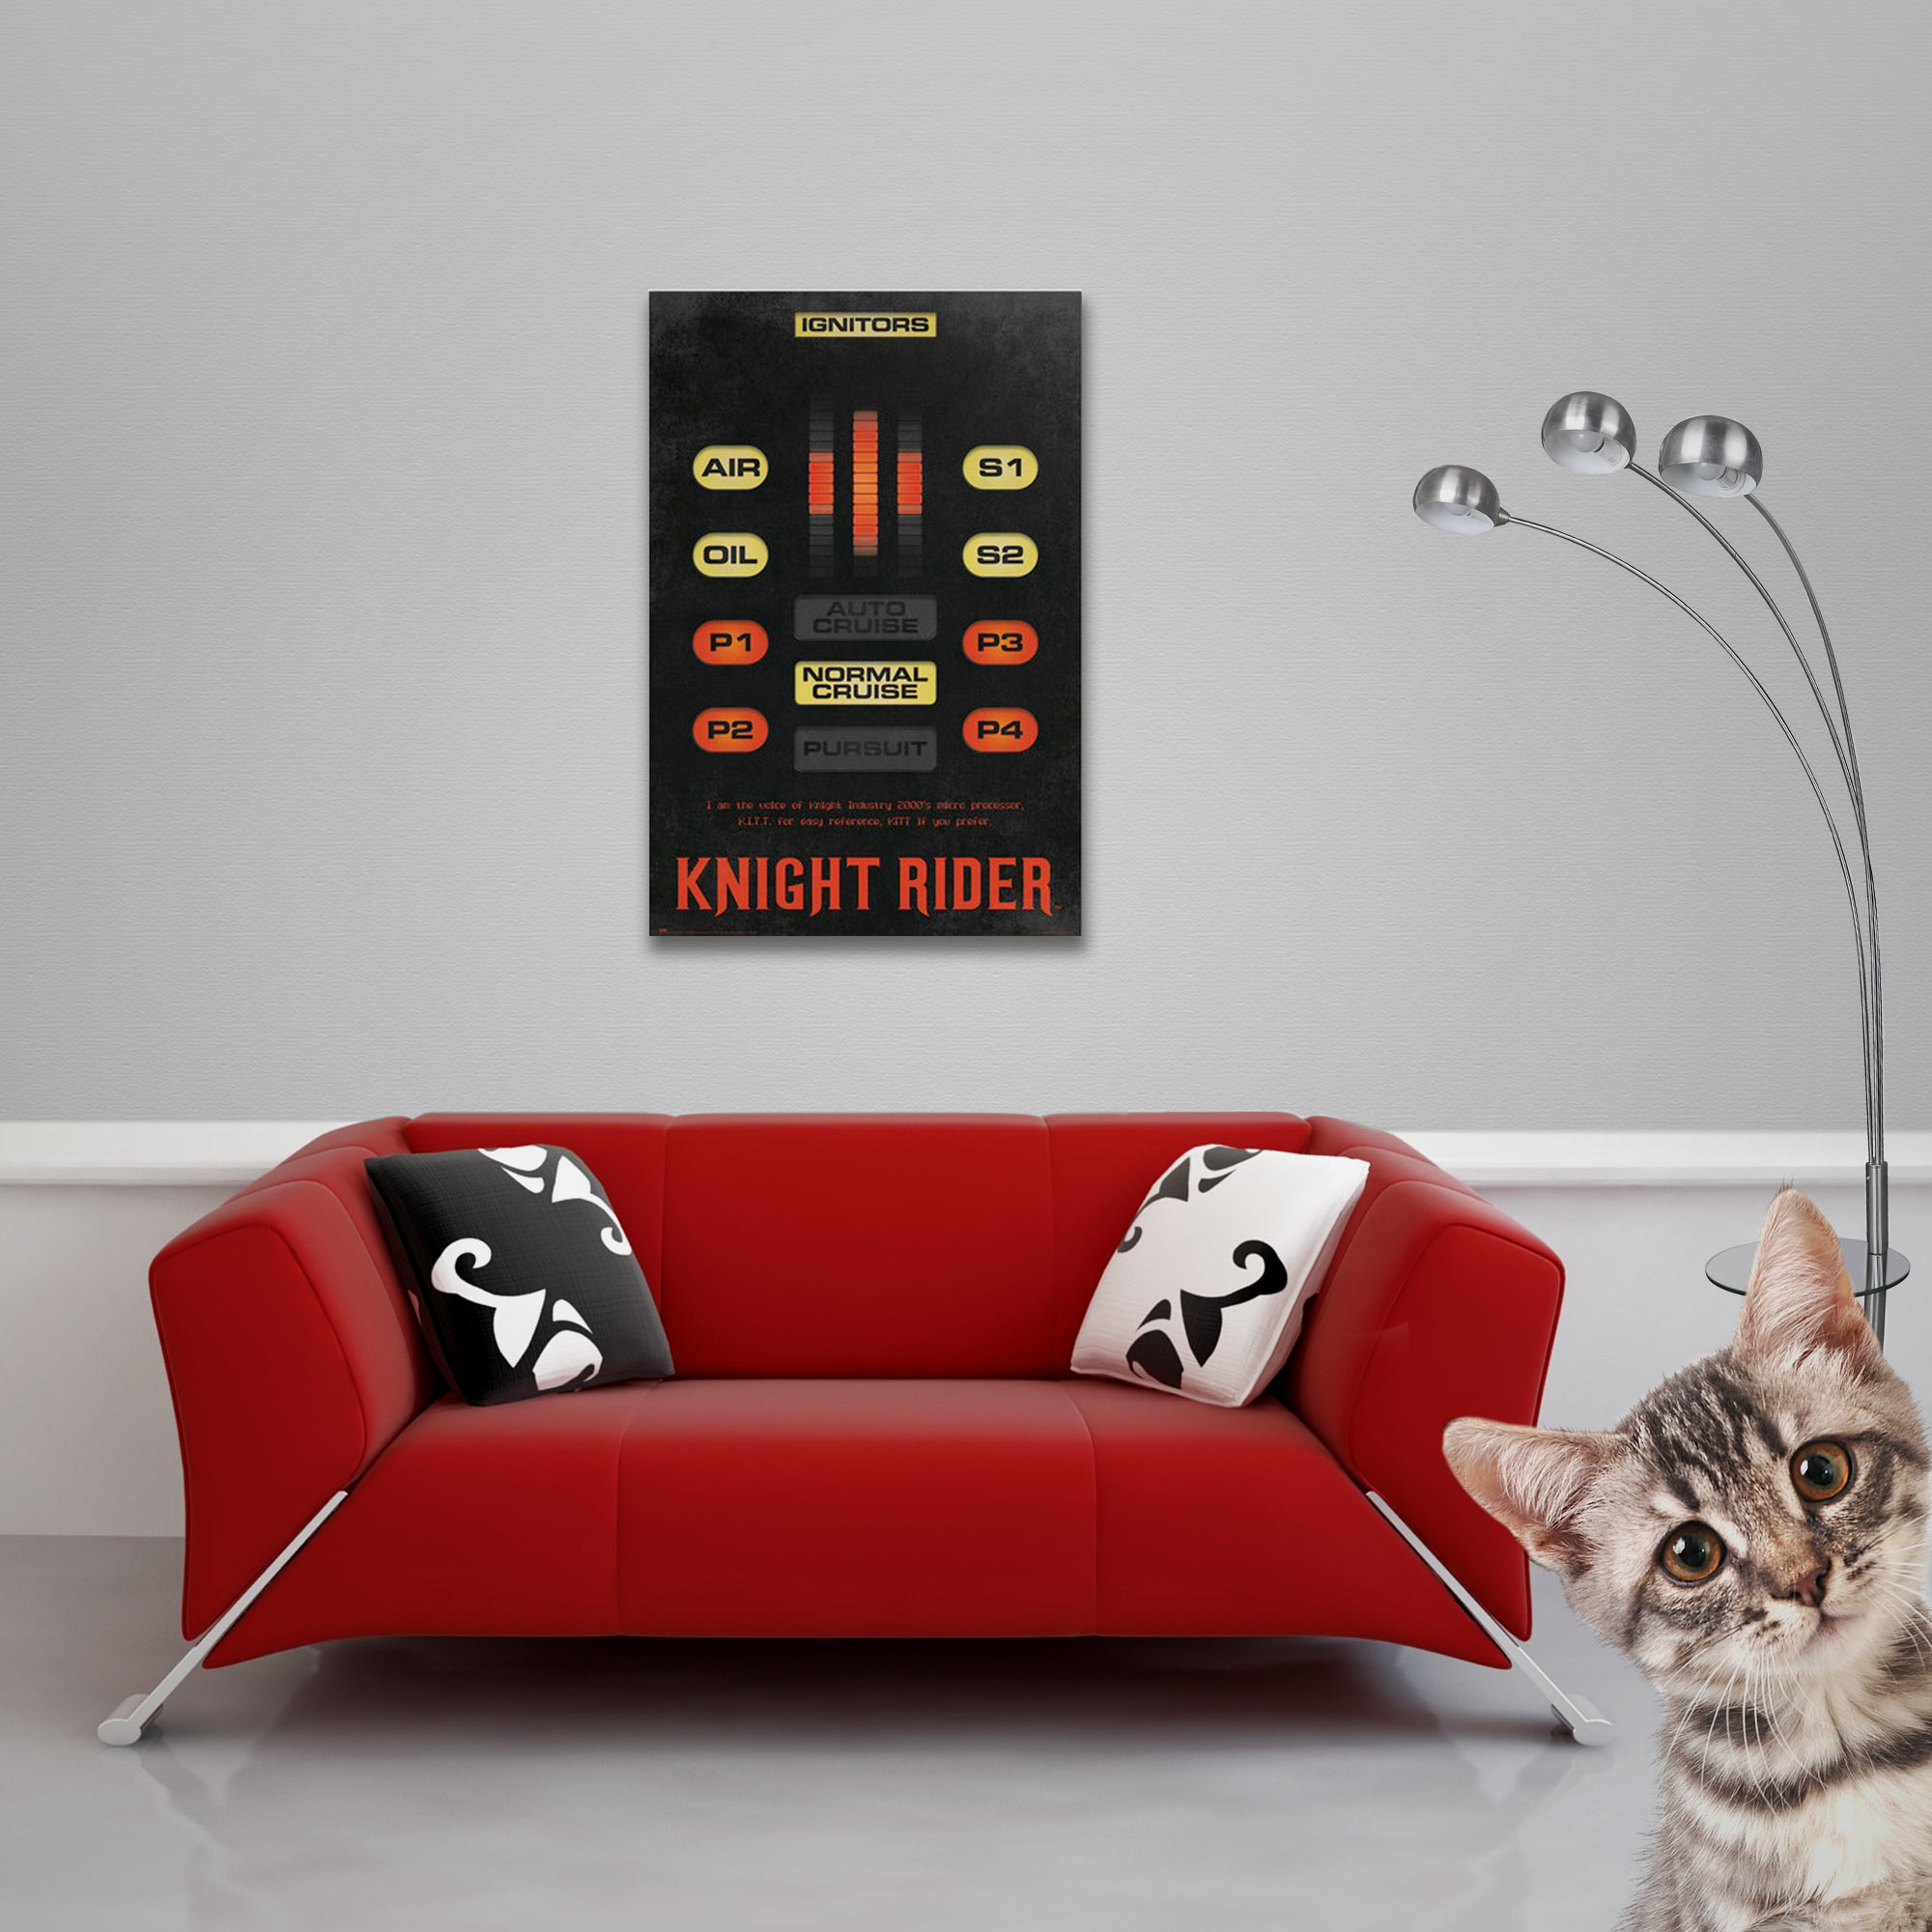 Knight Rider - KITT Kontrolleinheit